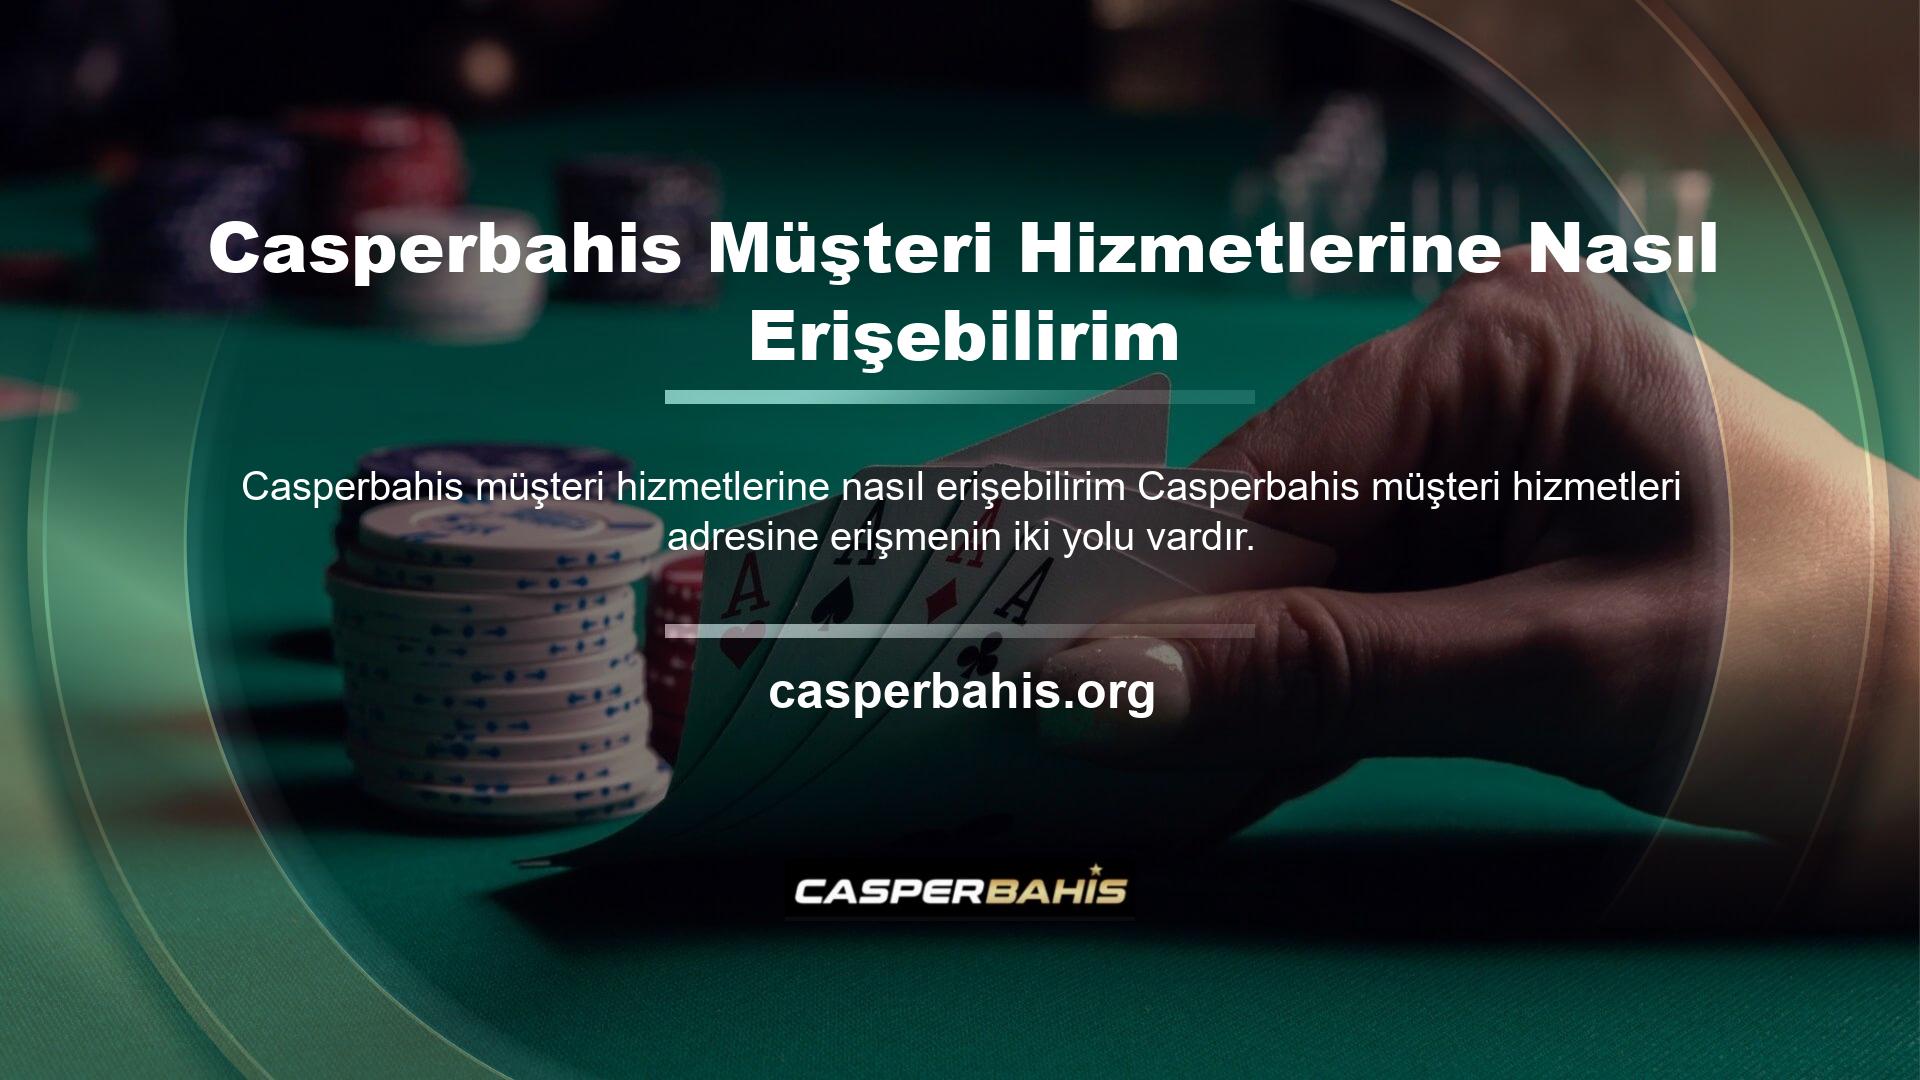 Birincisi, Casperbahis ile bağlantılı web sitesi üzerinden giriş yaparak menü alanından Casperbahis müşteri hizmetleri numarasına erişmek